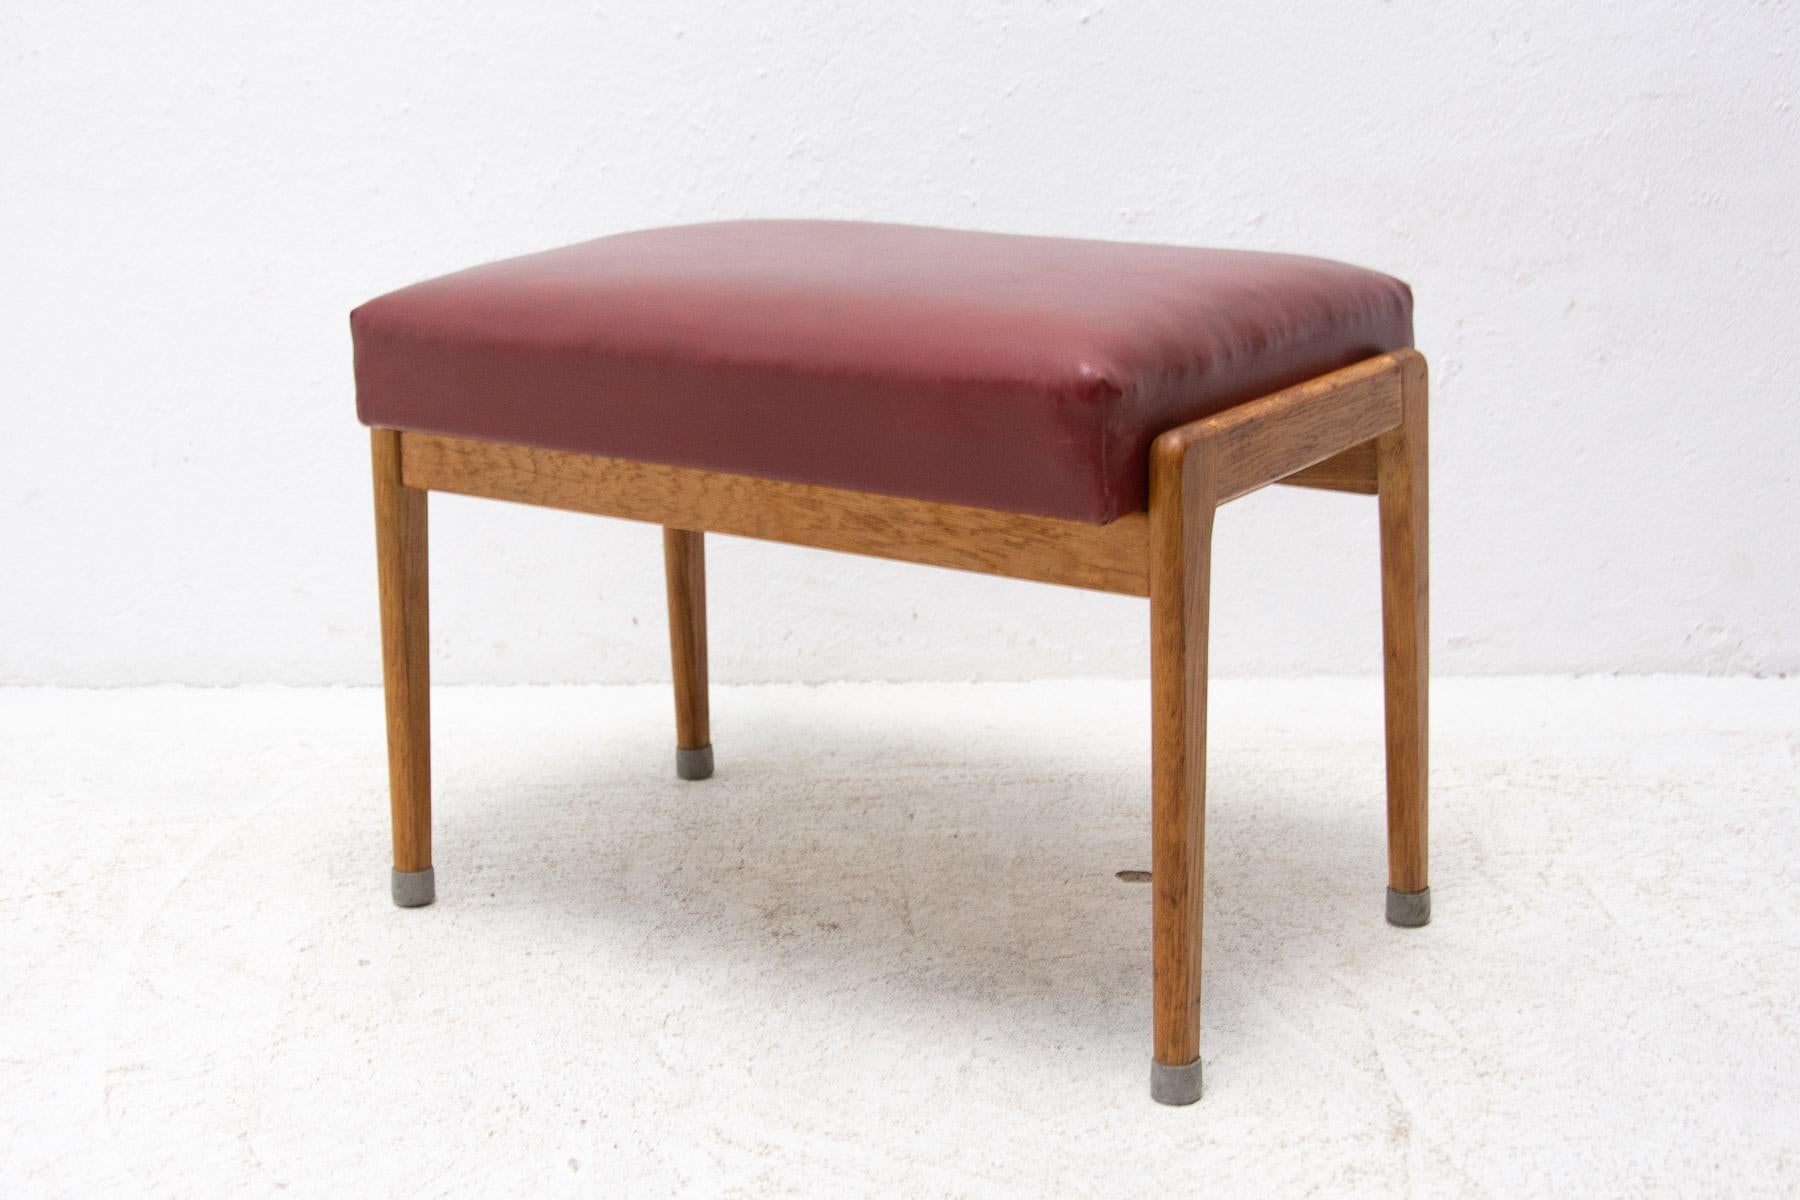 Ce tabouret/repose-pieds a été fabriqué par ULUV dans l'ancienne Tchécoslovaquie dans les années 1960.

L'assise est en similicuir et la structure est en bois de hêtre. En très bon état d'origine, montrant des signes d'âge et d'utilisation.

